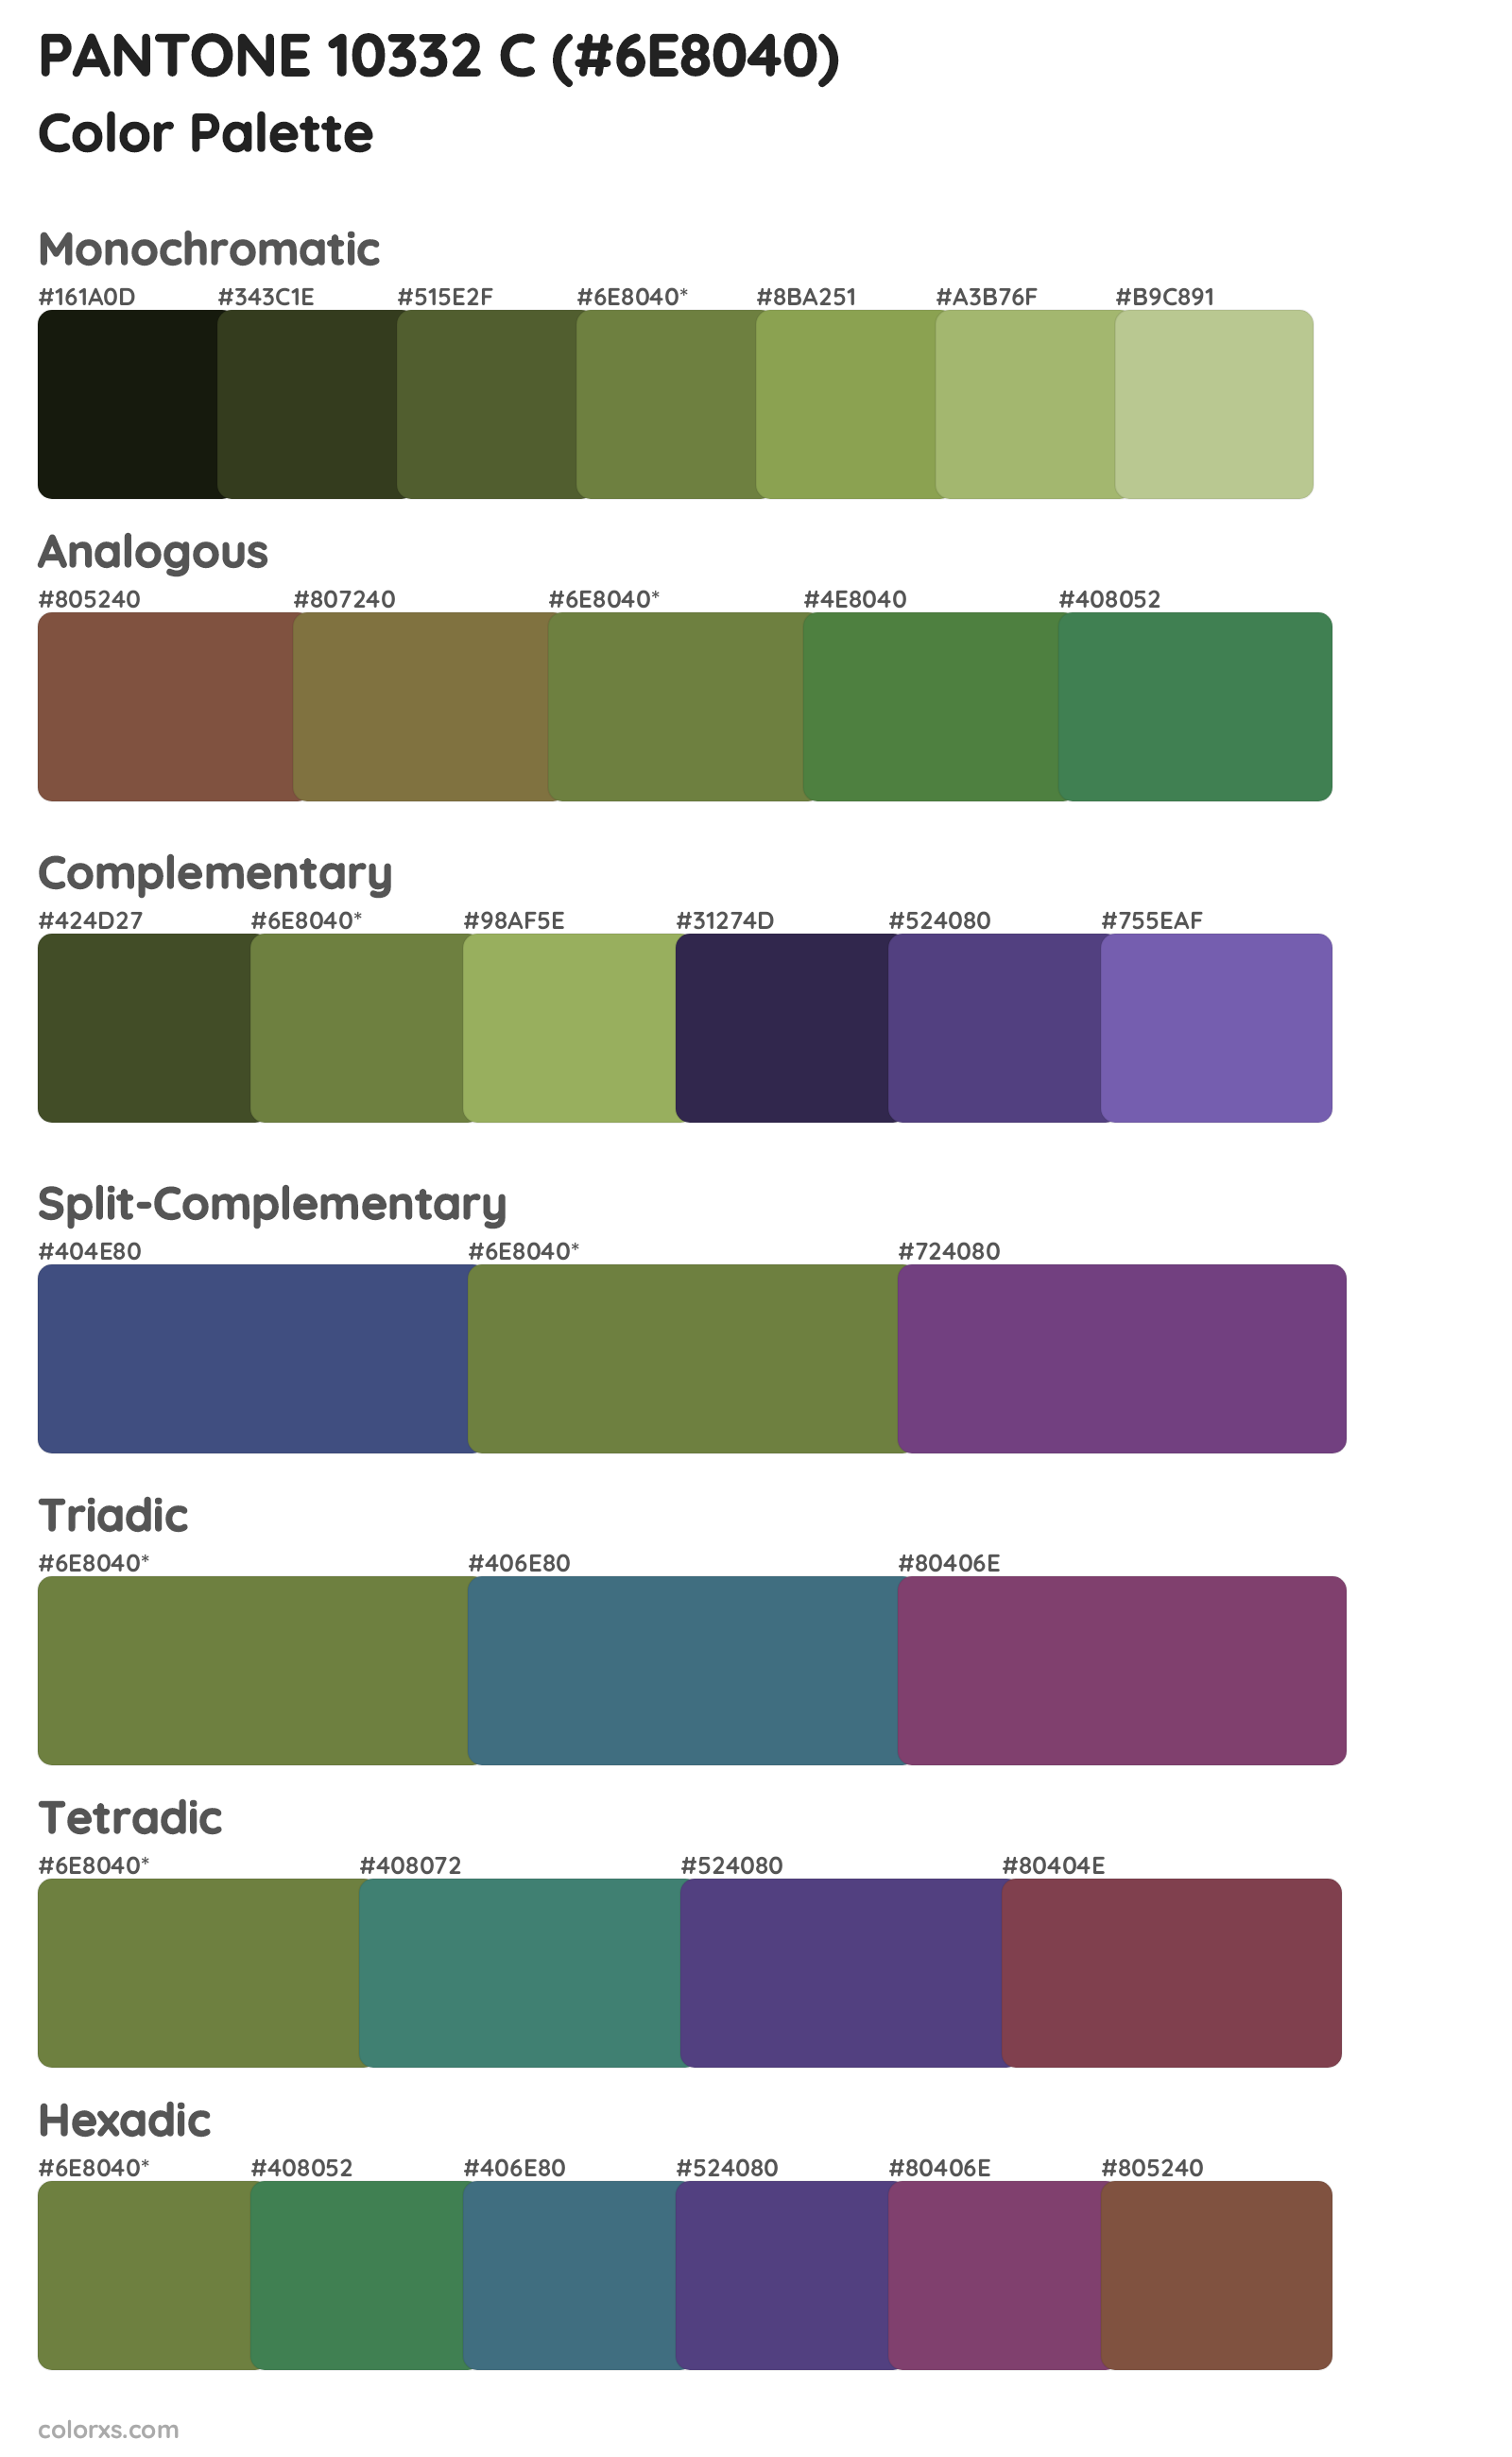 PANTONE 10332 C Color Scheme Palettes